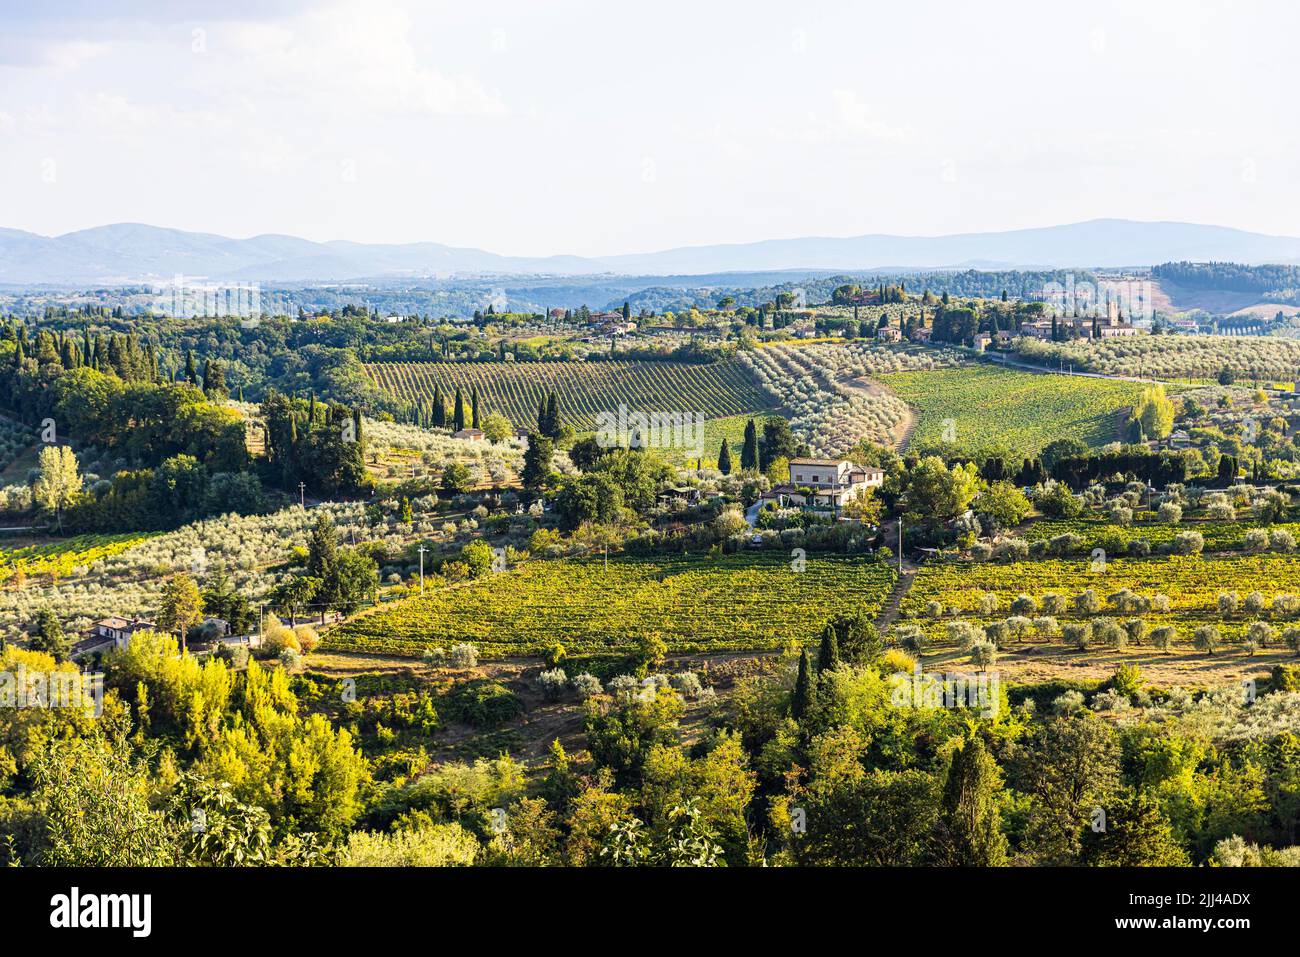 Paesaggio collinare con oliveti e vigneti, vista dalle mura della città, San Gimignano, Toscana, Italia Foto Stock